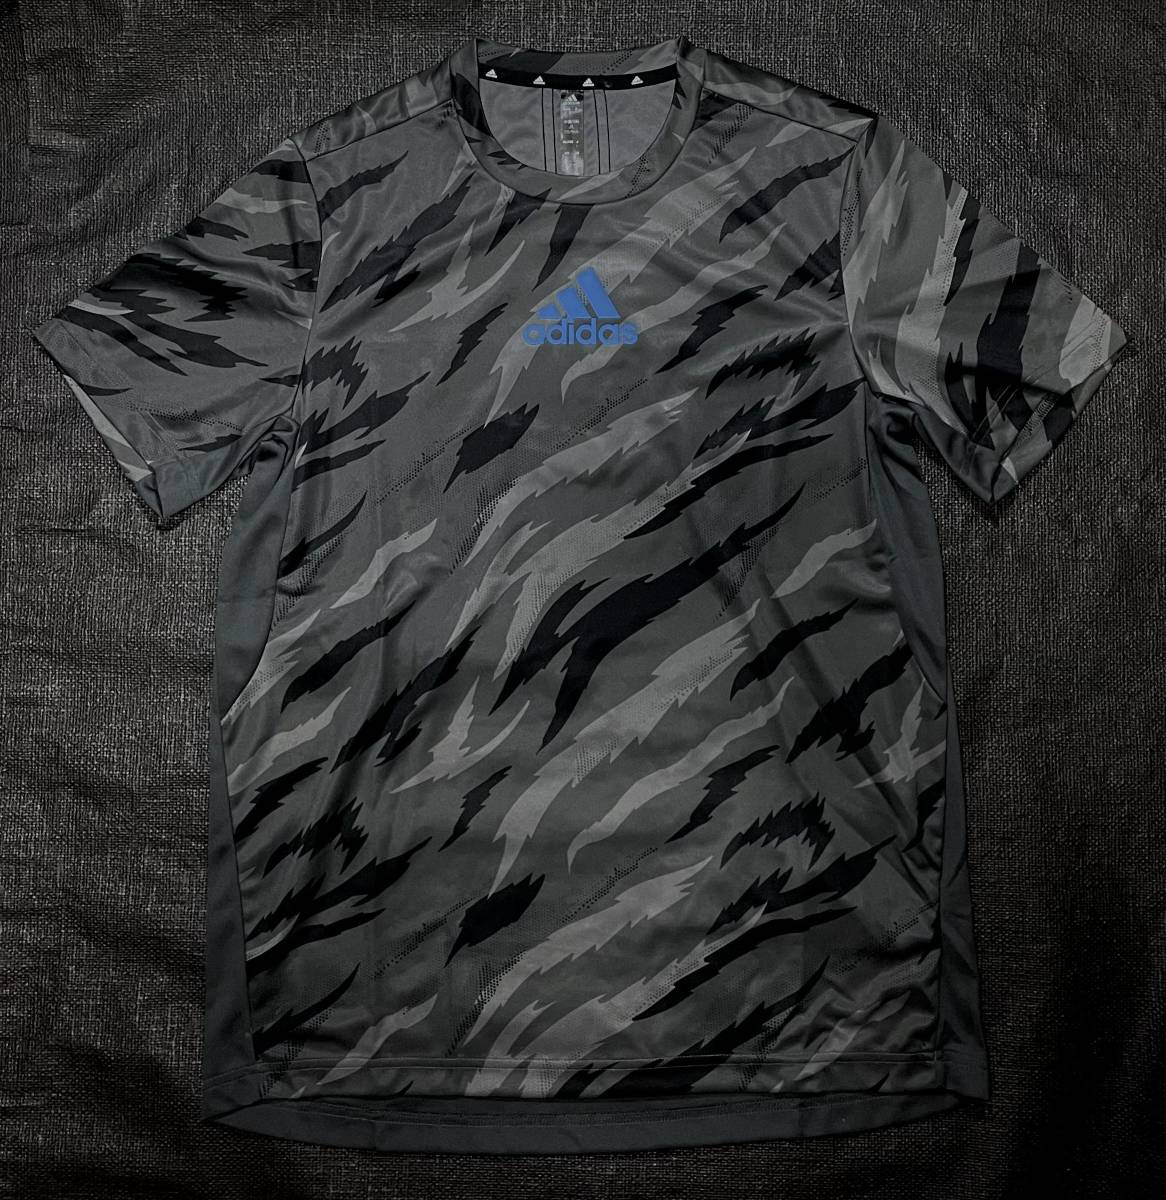 新品XO(2XL)アディダスADIDASカモフラ グレー ブラック ブルー CAMO 半袖Tシャツ ハーフパンツ 上下セット ジャージ 迷彩 吸汗 速乾 正規品_画像2